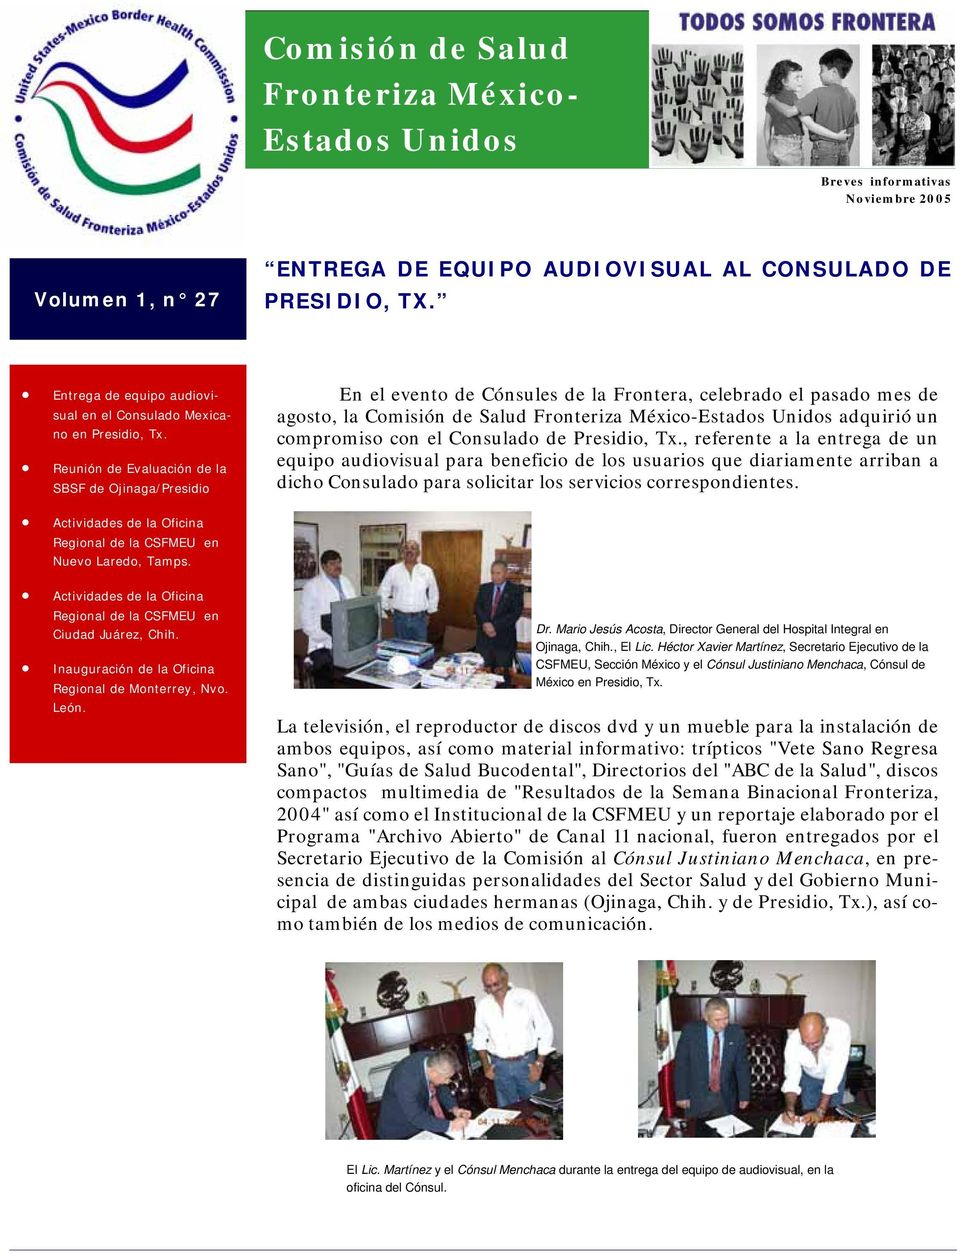 Reunión de Evaluación de la SBSF de Ojinaga/Presidio En el evento de Cónsules de la Frontera, celebrado el pasado mes de agosto, la Comisión de Salud Fronteriza México-Estados Unidos adquirió un